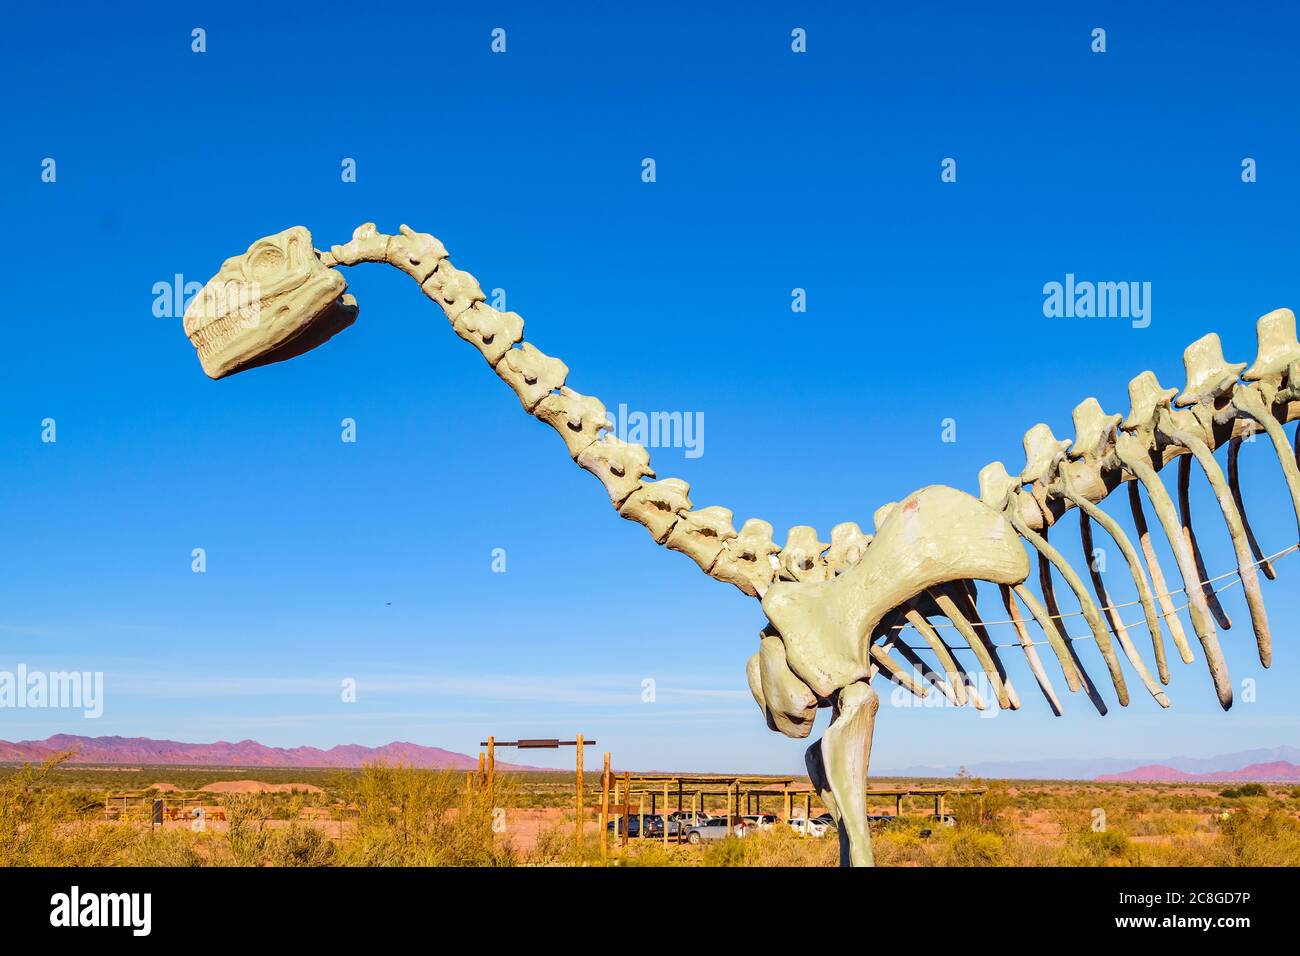 Modèles de dinosaures au parc national de talampaya, province de la rioja, argentine Banque D'Images